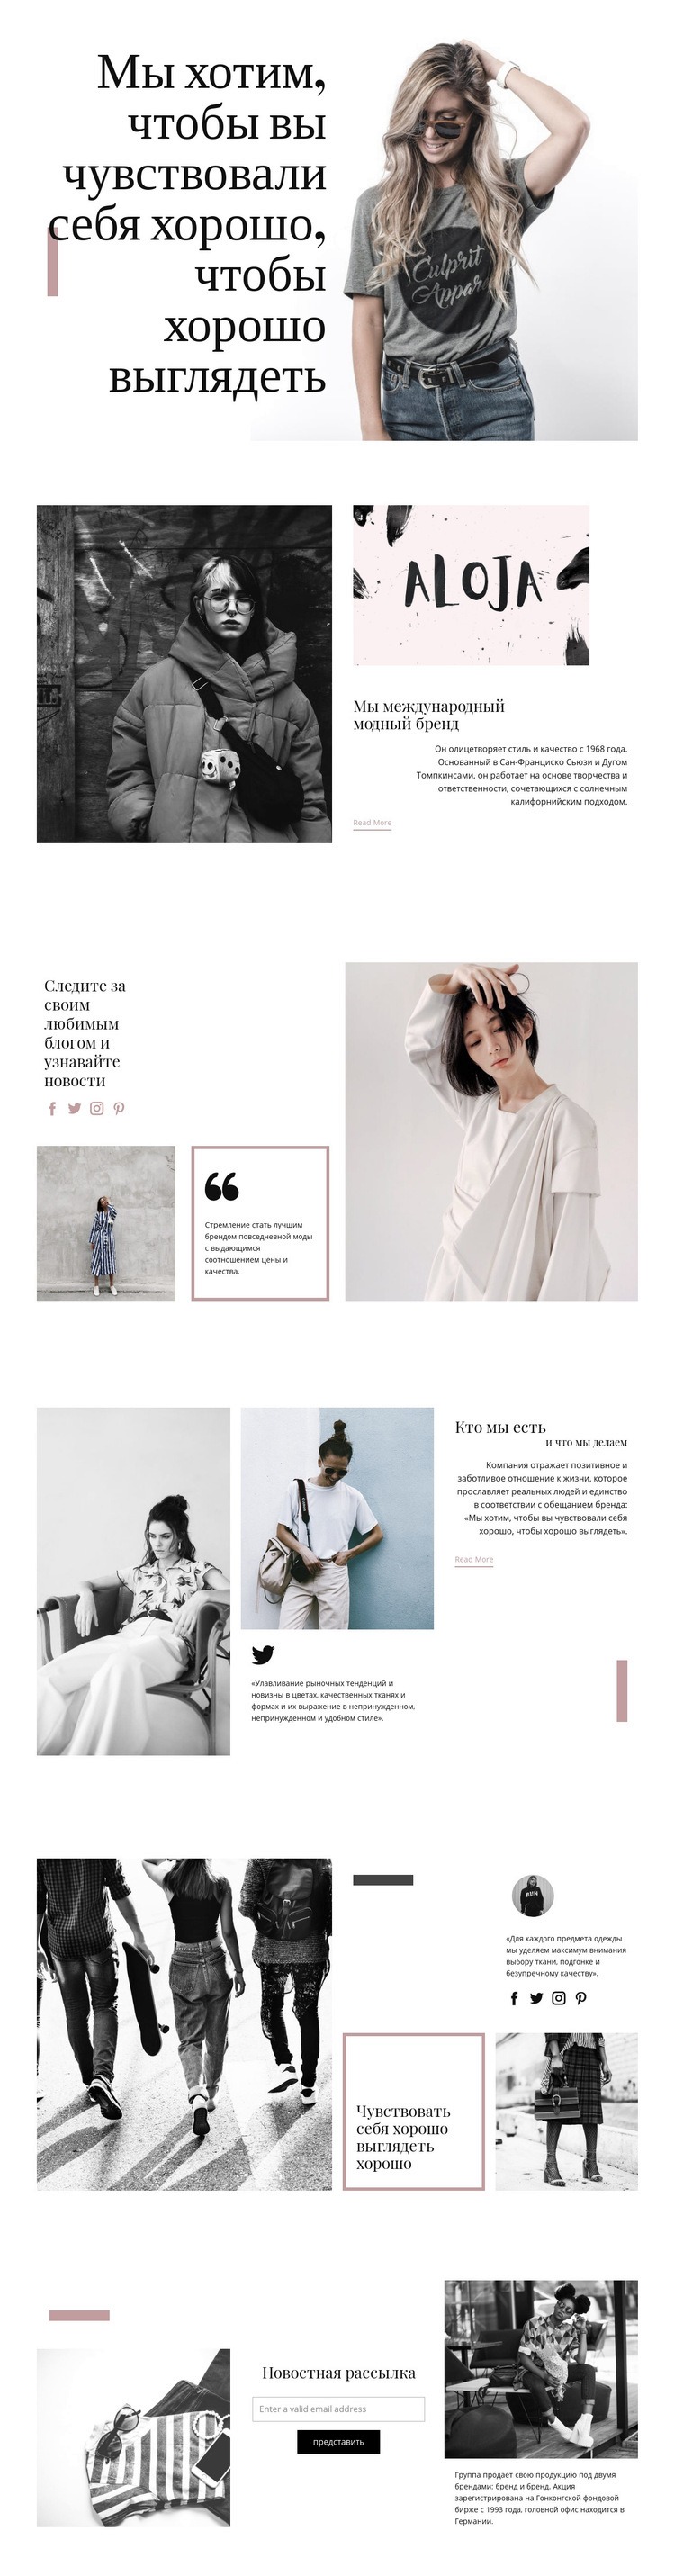 Модный стиль Мокап веб-сайта